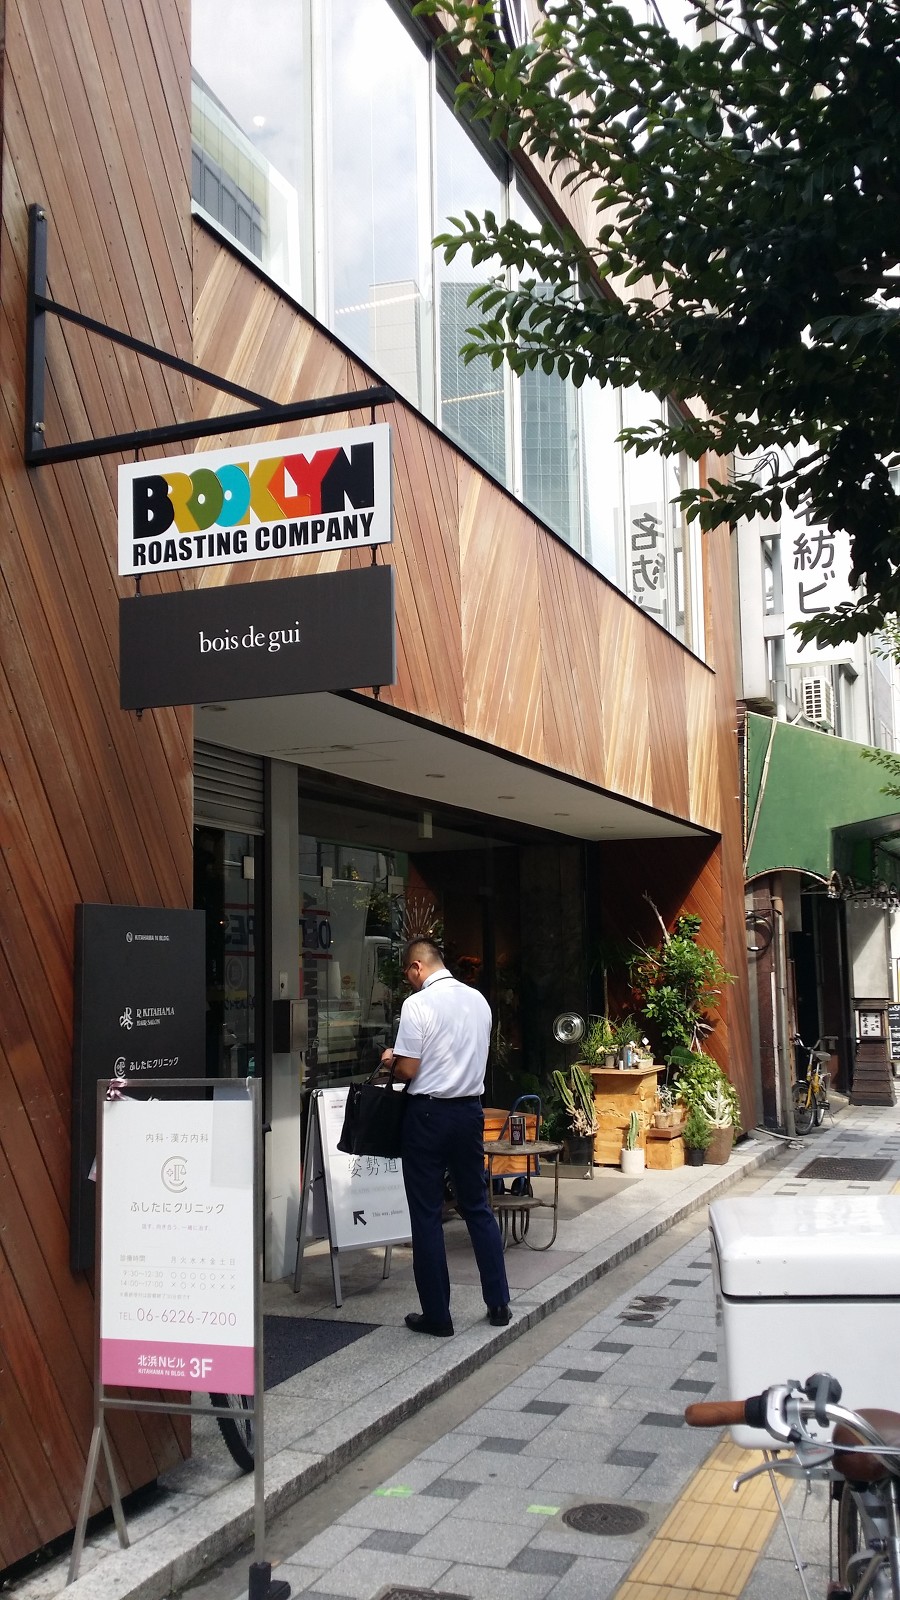 일본 커피 기행 - 36 오사카 브루클린 로스팅 컴퍼니 키타하마역 근처-- 감성로스팅 카페알트로